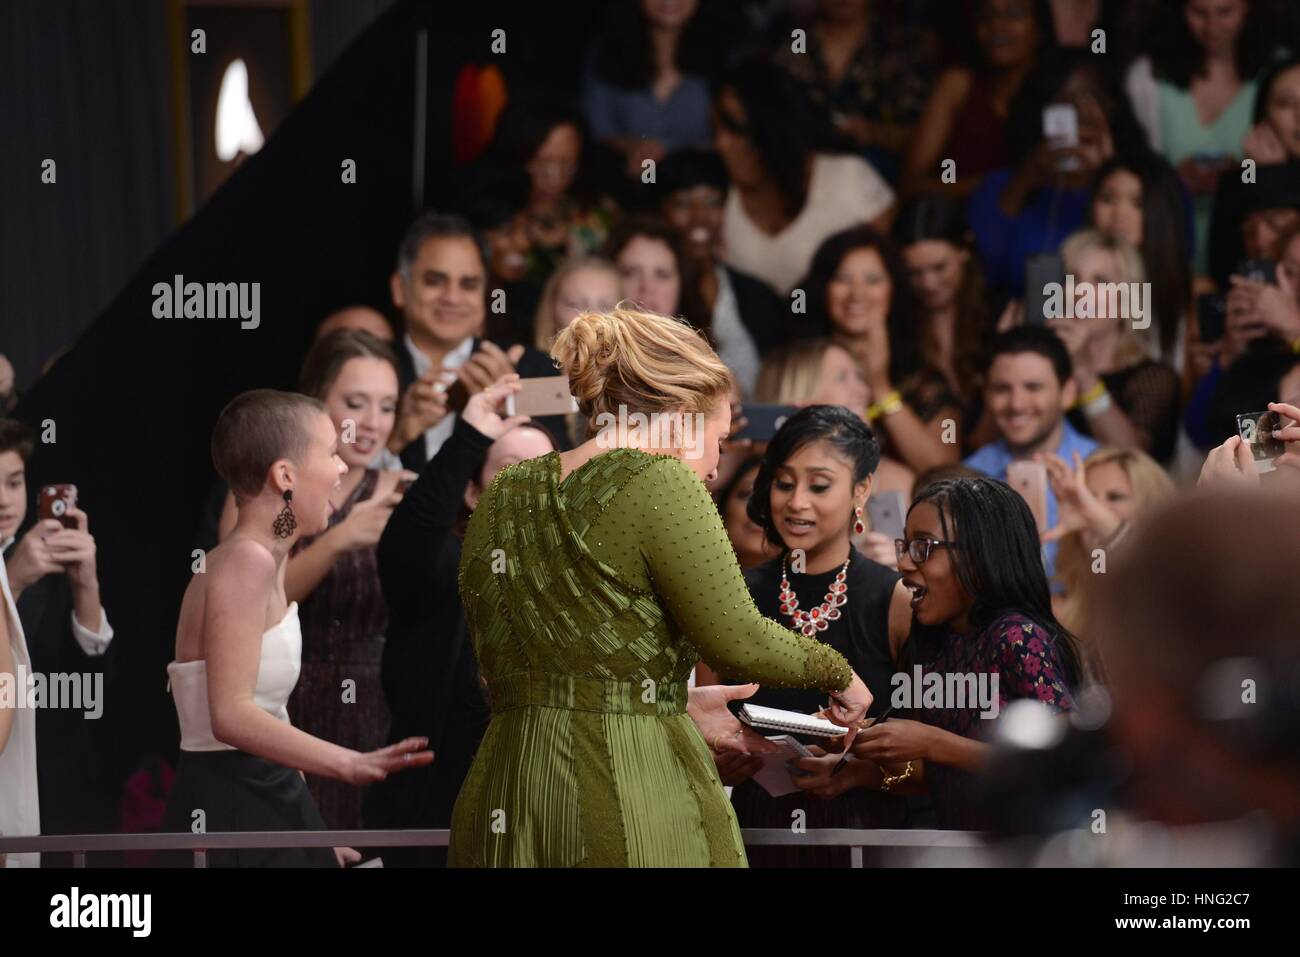 Los Angeles, CA, Stati Uniti d'America. 12 Feb, 2017. Adele presso gli arrivi per 59th Annual Grammy Awards 2017 - Arrivi, STAPLES Center di Los Angeles, CA 12 febbraio 2017. Credito: Max Parker/Everett raccolta/Alamy Live News Foto Stock